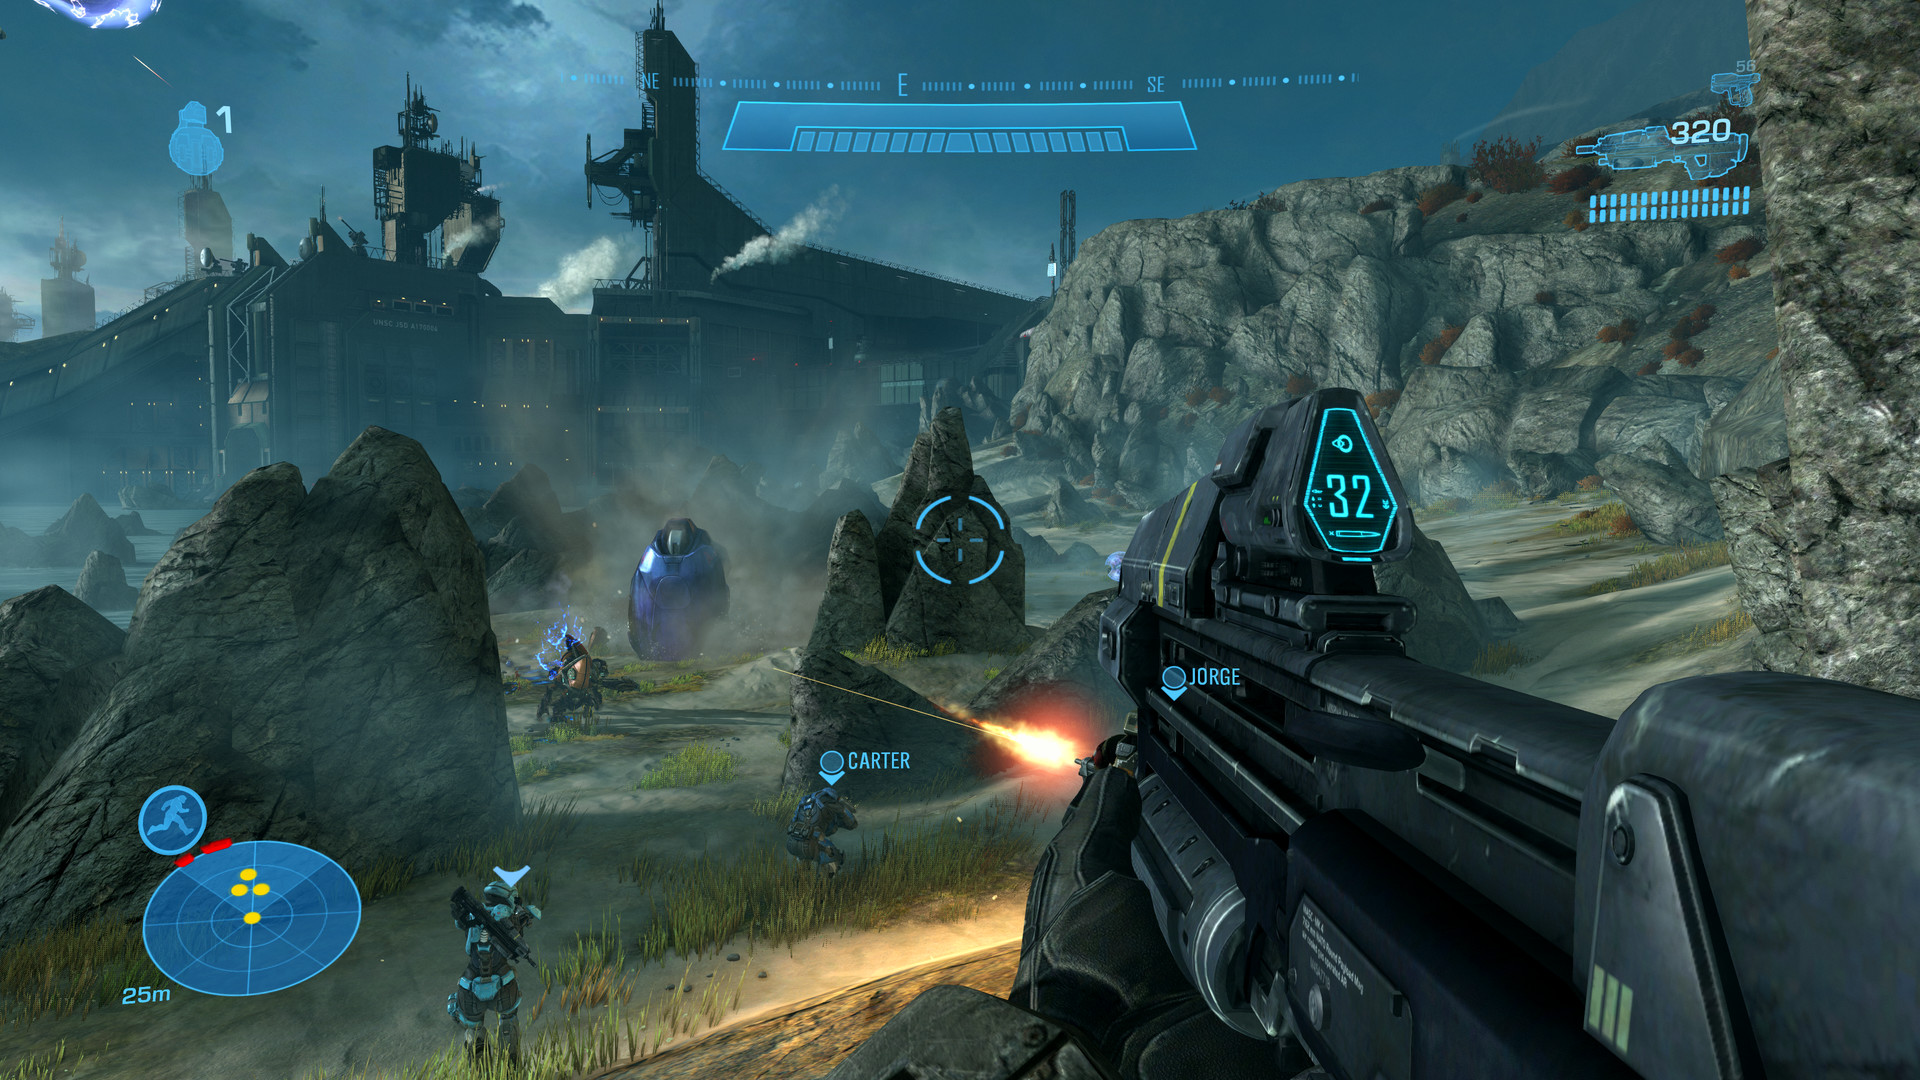 Persona relajado James Dyson Halo: The Master Chief Collection en Steam